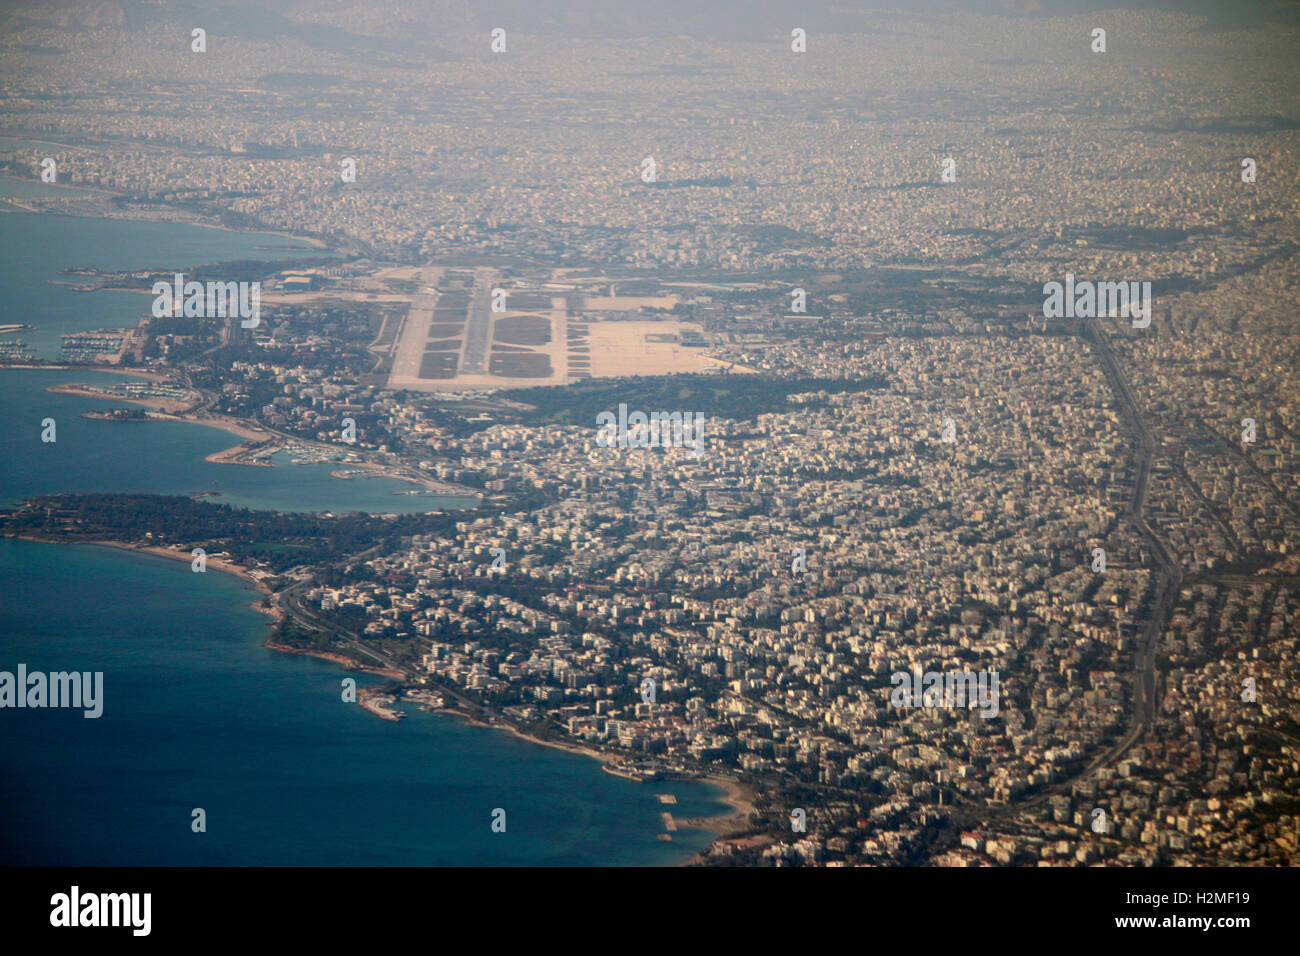 Flugzeug Aus einem Blick auf Athen, griechenland. Foto de stock